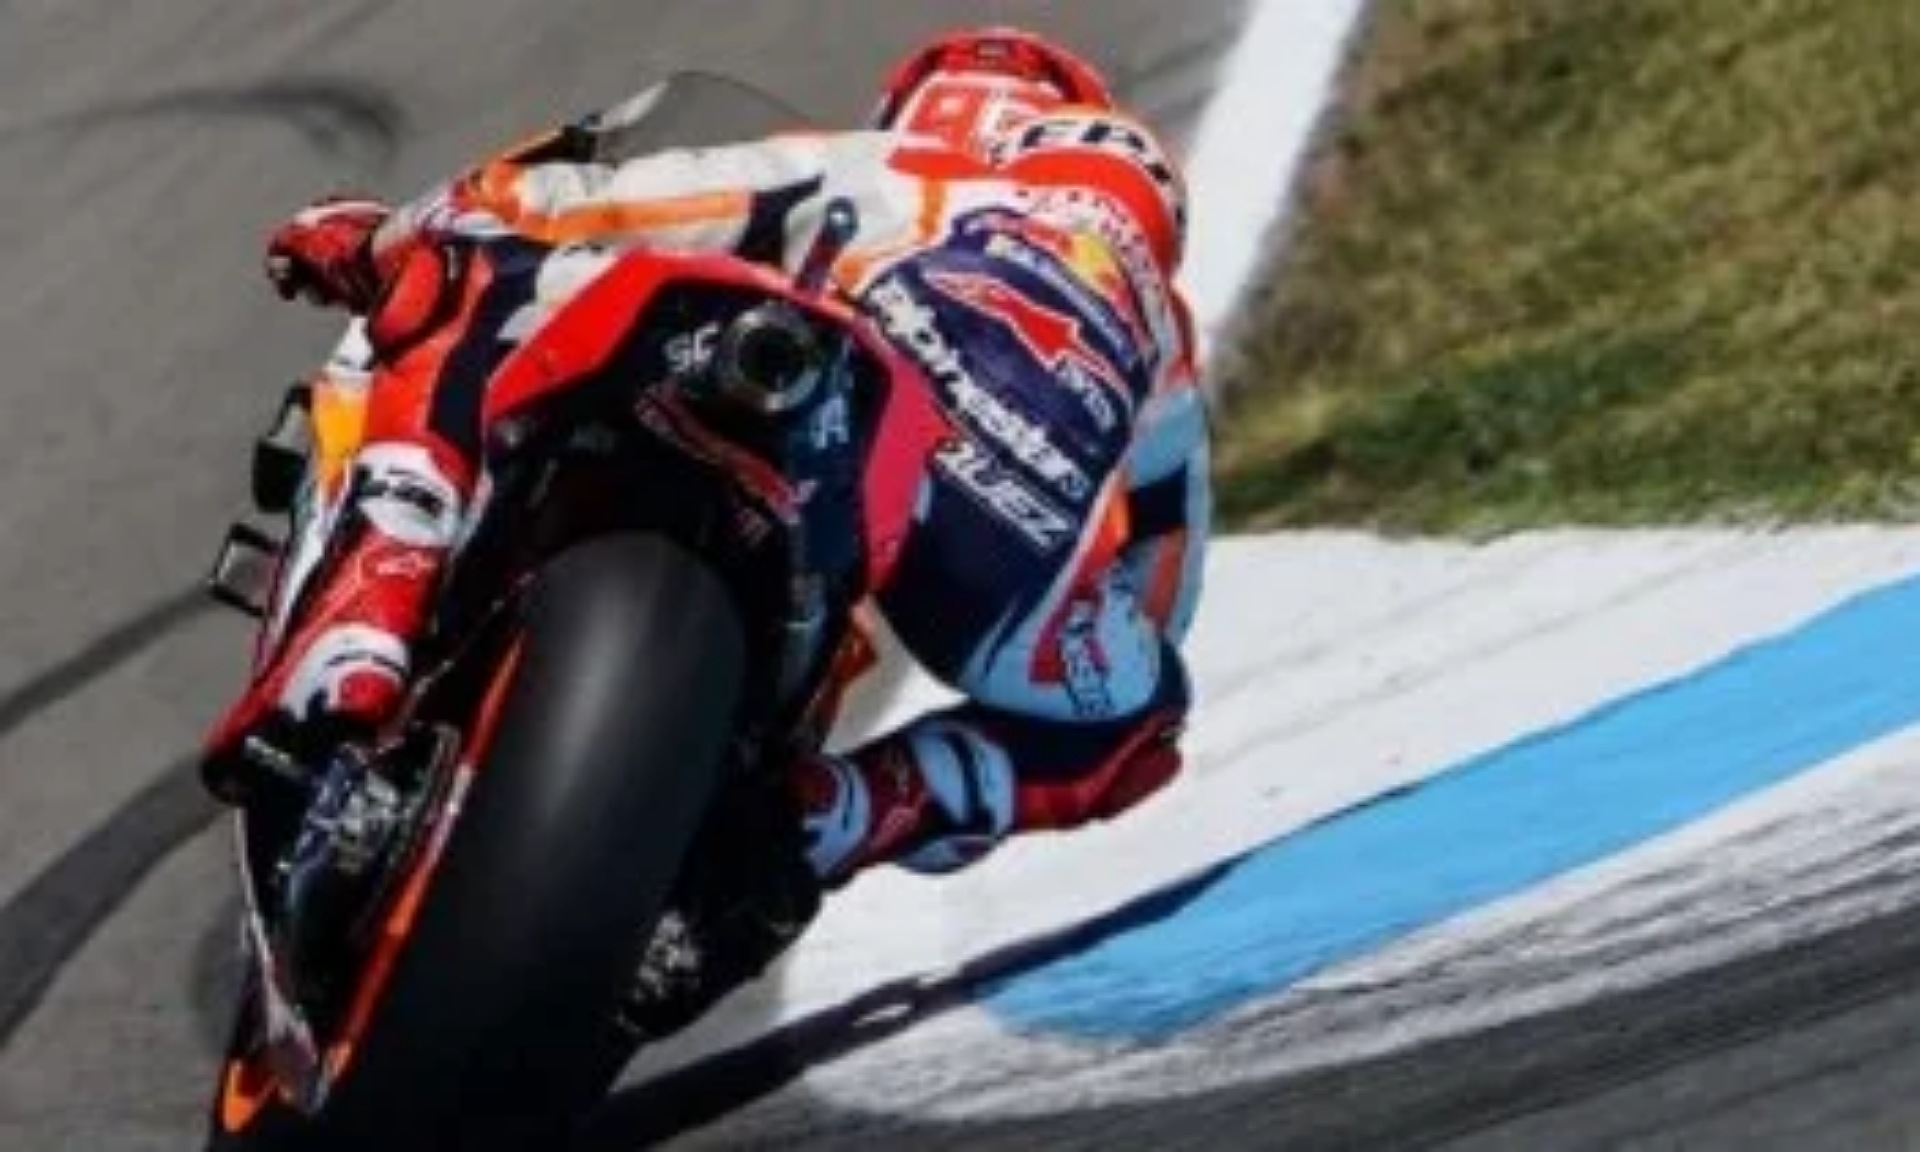 Klasemen Pembalap MotoGP, Marquez Tetap di Puncak Meski Gagal Juara